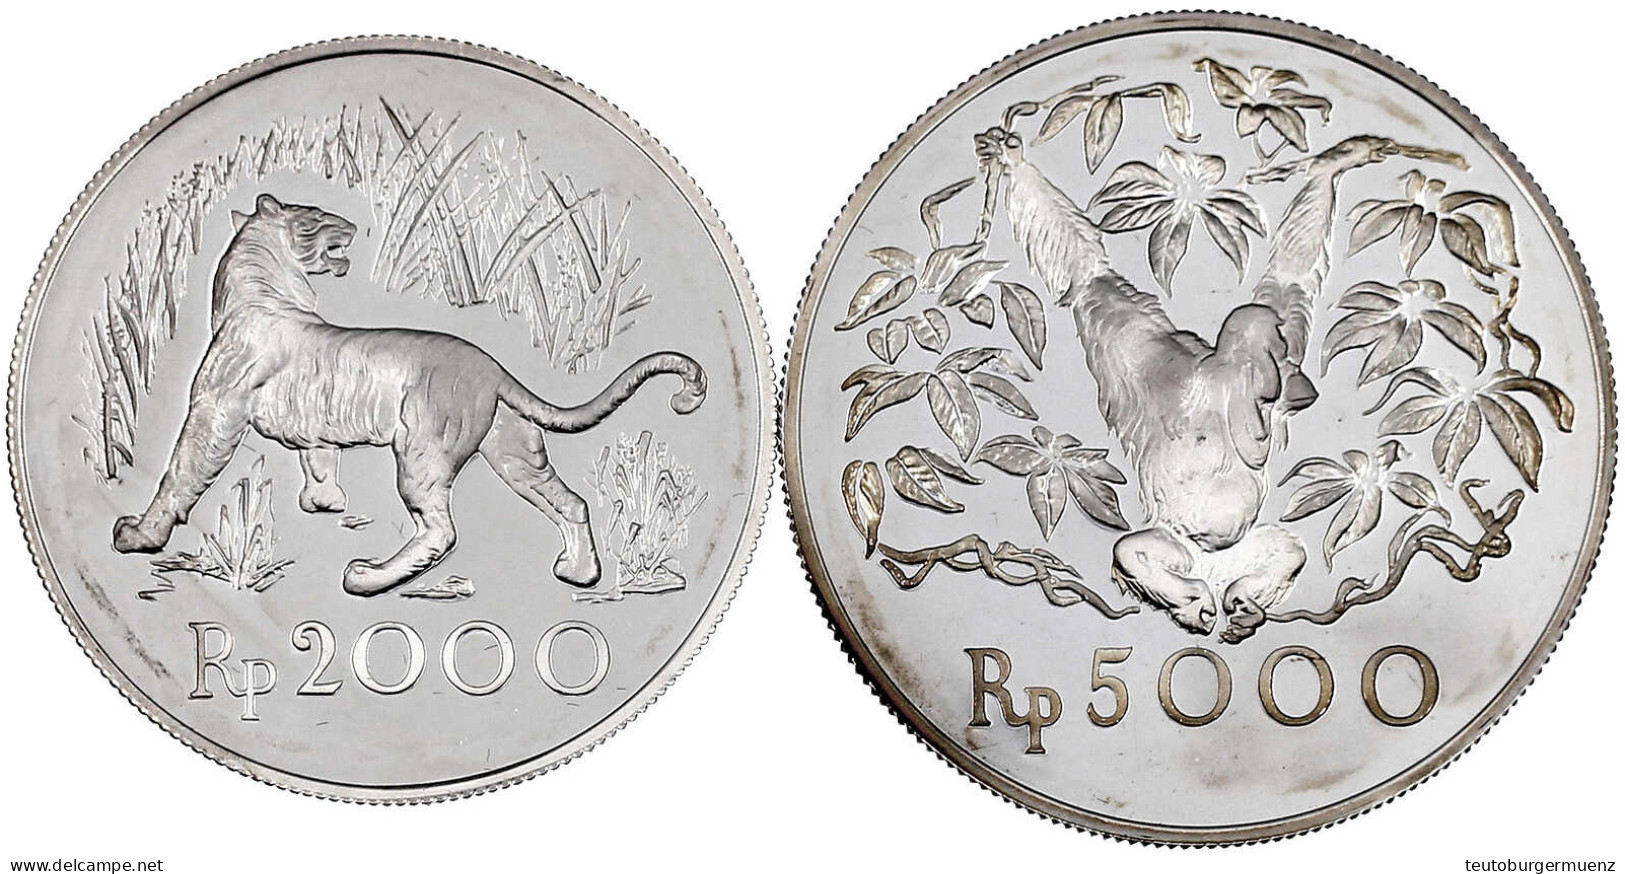 2 Silbermünzen: 2000 Und 5000 Rupien 1974. Java Tiger Und Orang-Utan. Polierte Platte. Krause/Mishler 39 Und 40a. - Indonesia